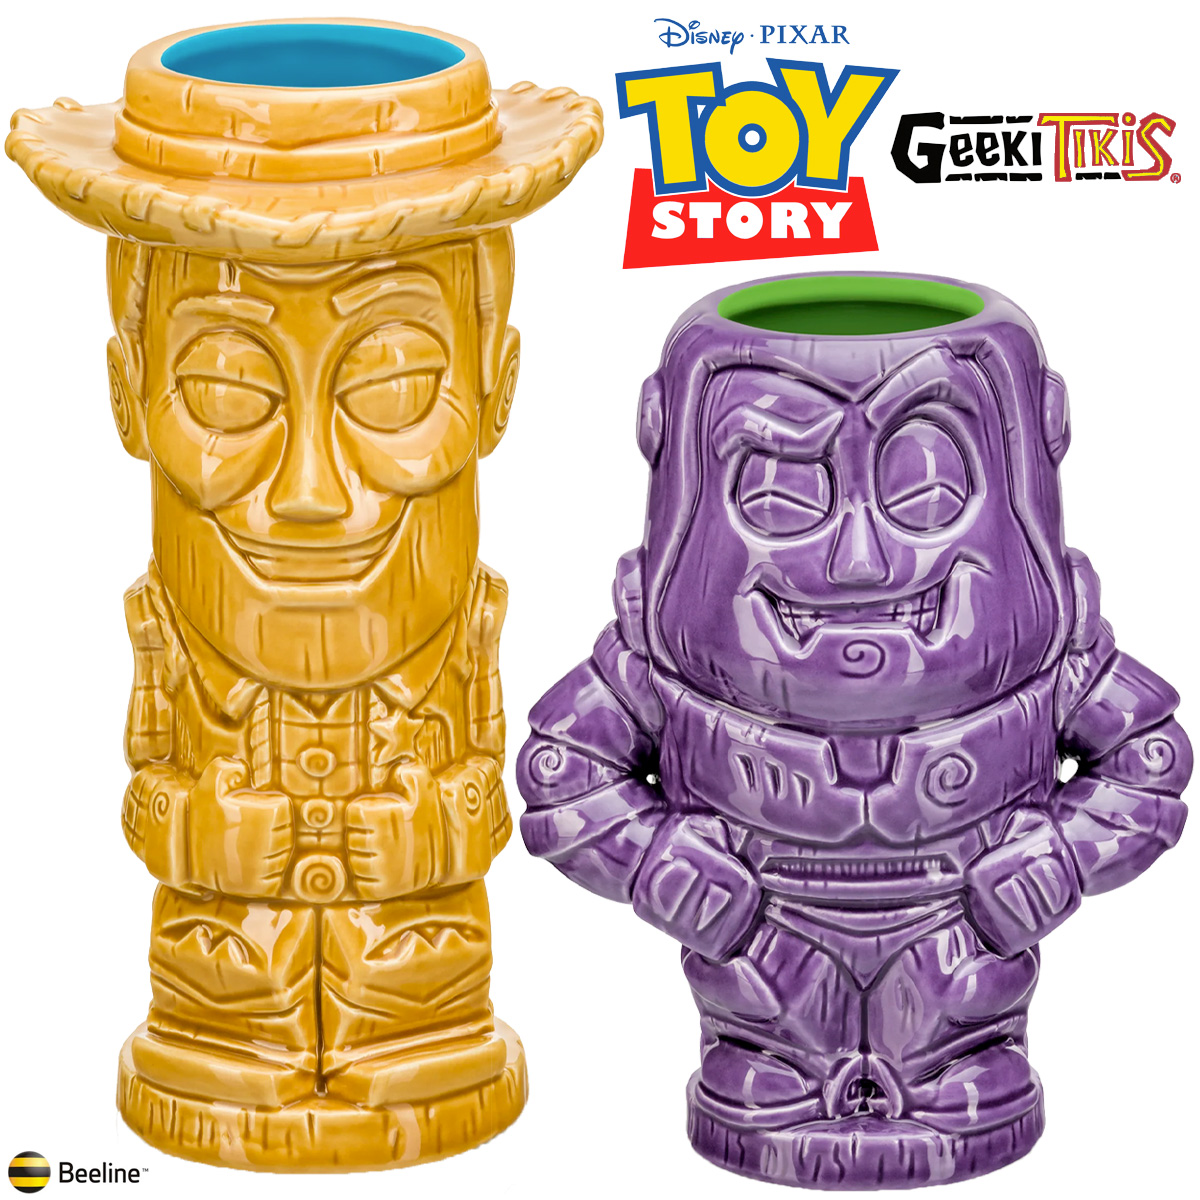 Canecas Toy Story Geeki Tikis com Woody e Buzz Lightyear